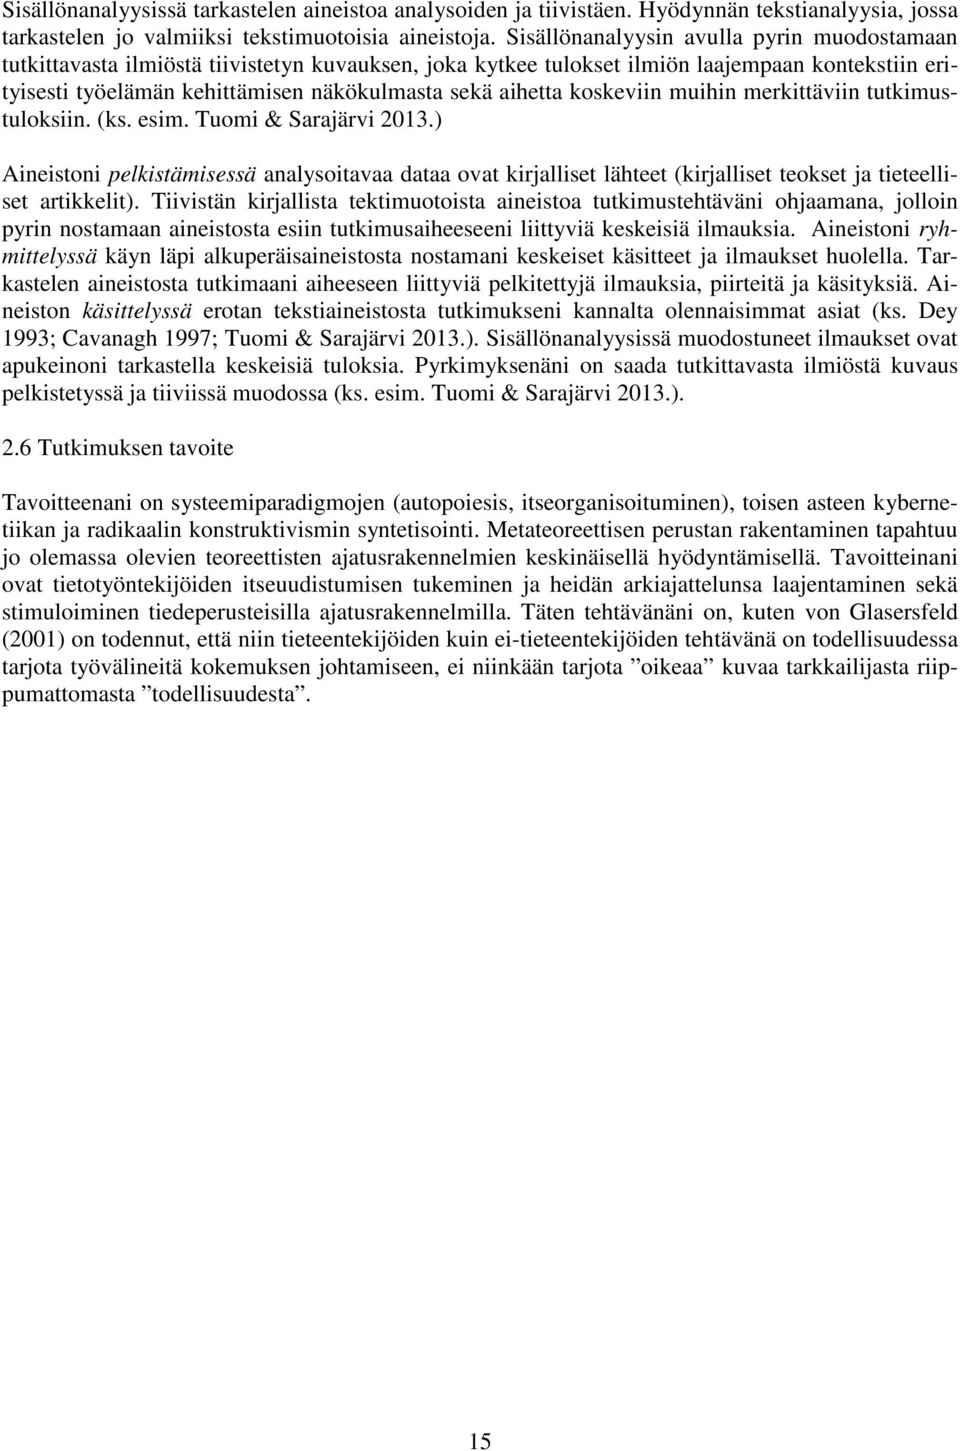 aihetta koskeviin muihin merkittäviin tutkimustuloksiin. (ks. esim. Tuomi & Sarajärvi 2013.